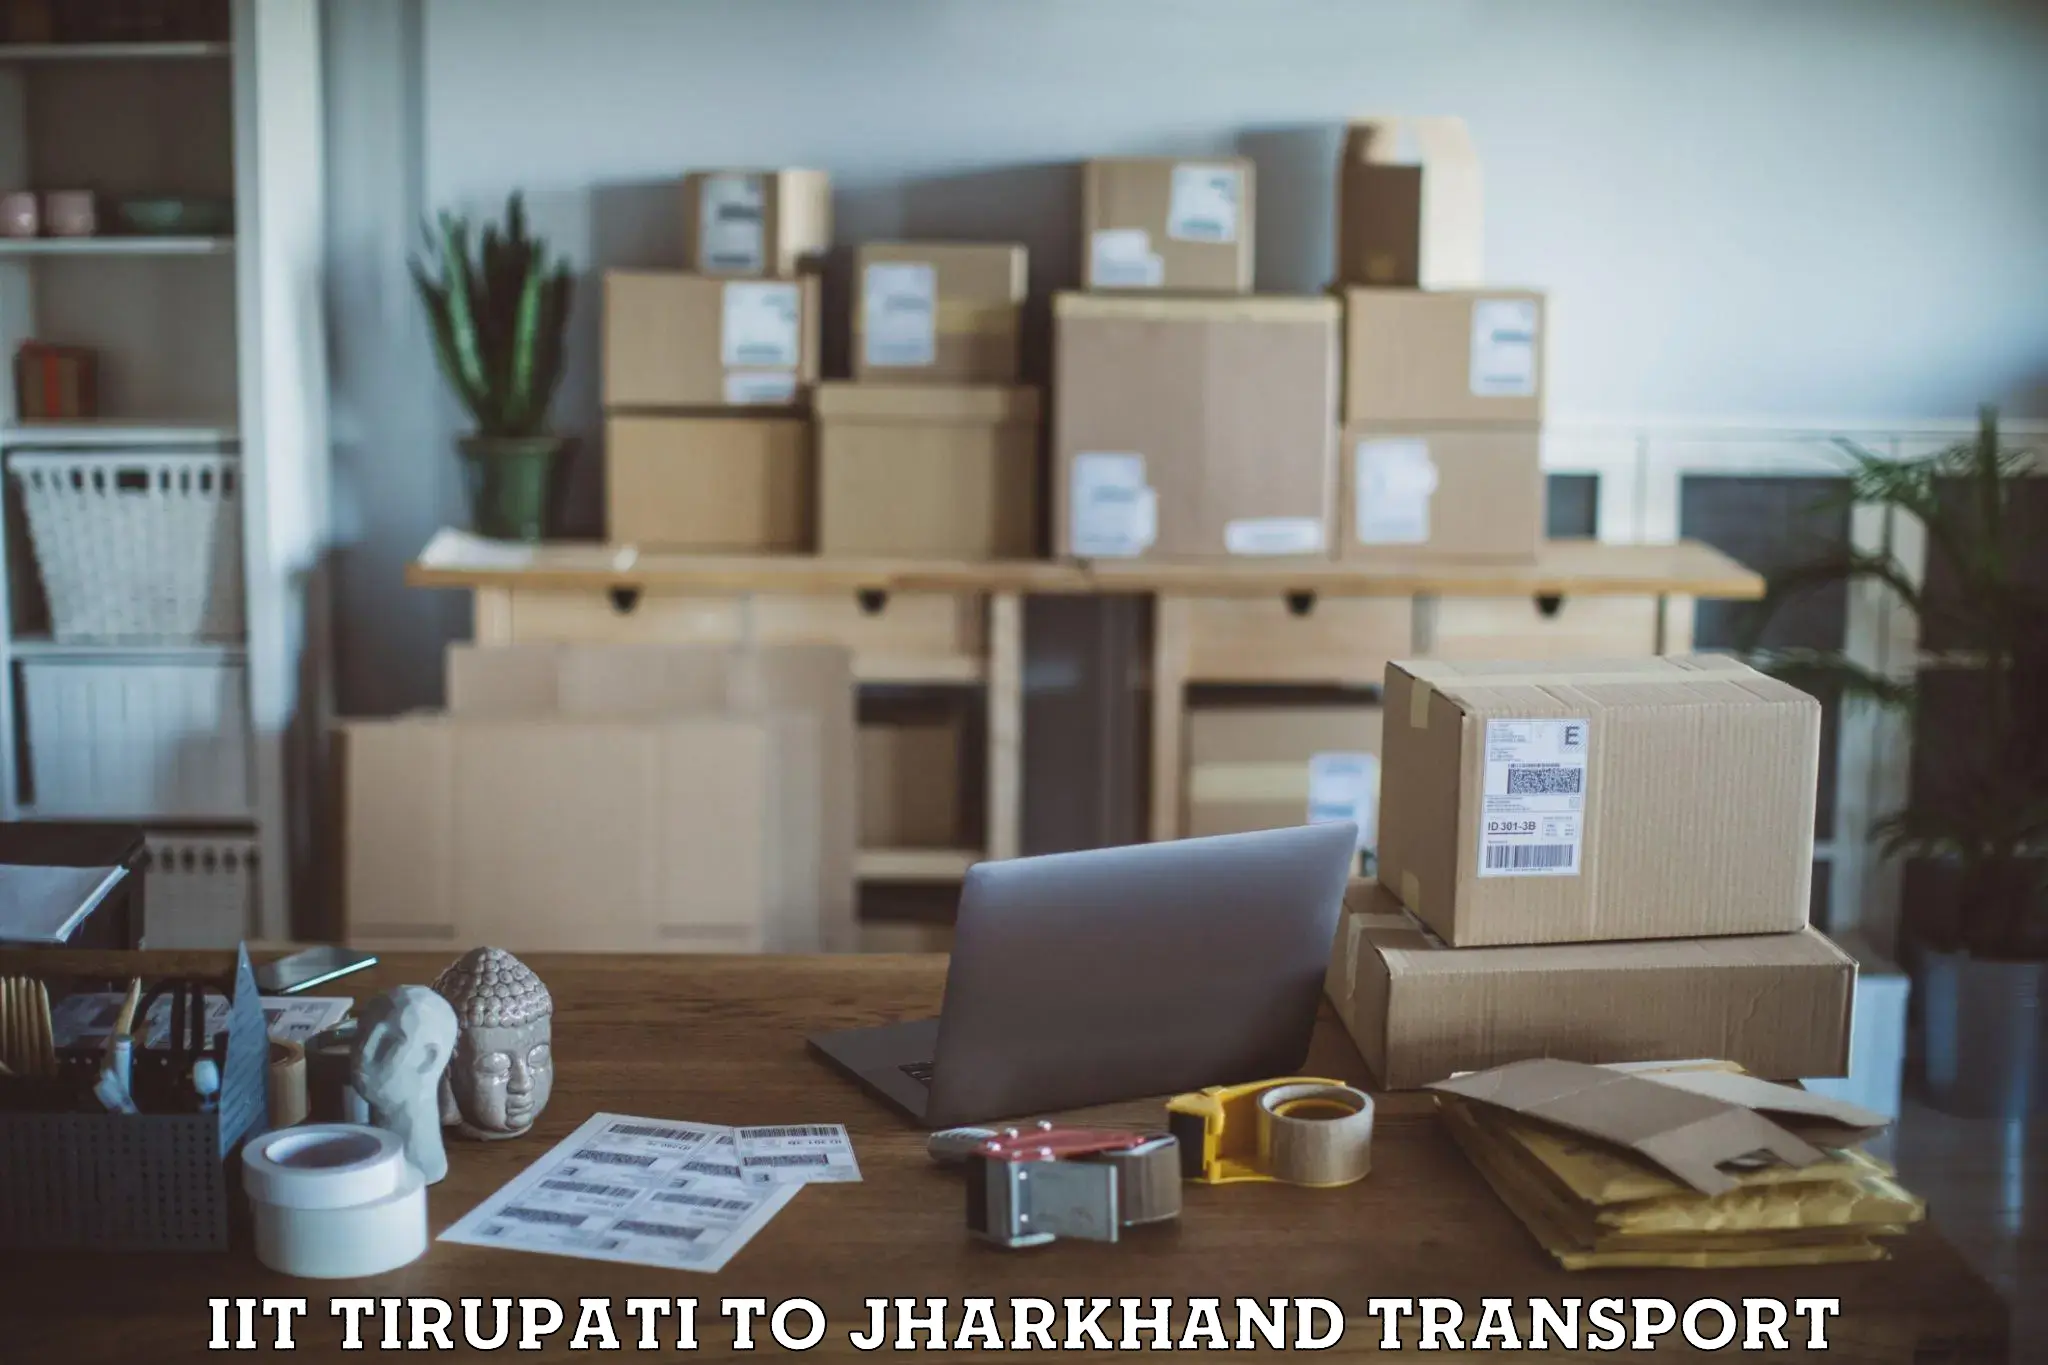 Transport shared services IIT Tirupati to Jamshedpur